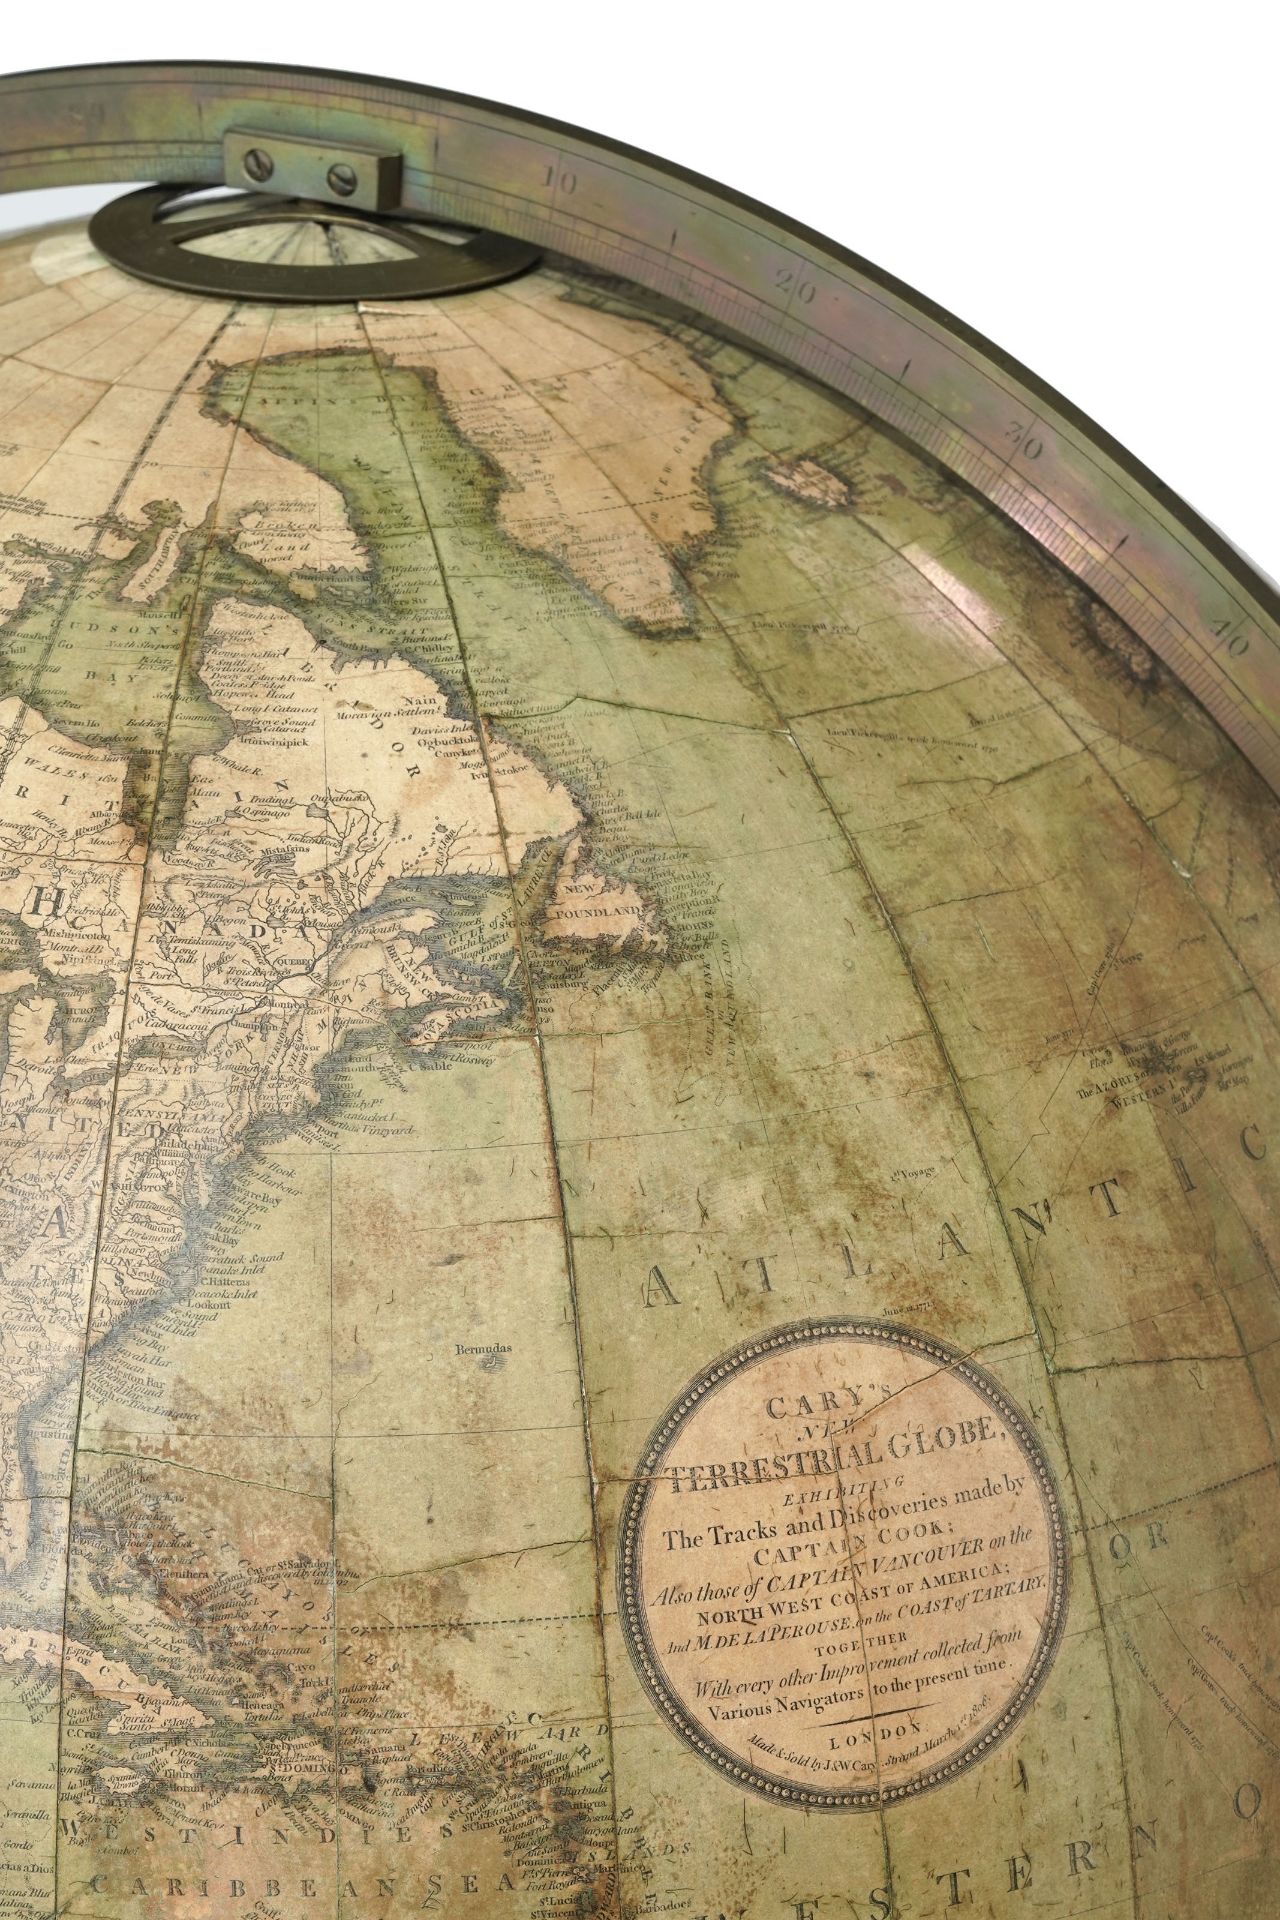 Paire de globes terrestre et céleste de parquet par J & W Cary, le globe terrestre daté 1806, le glo - Image 3 of 10